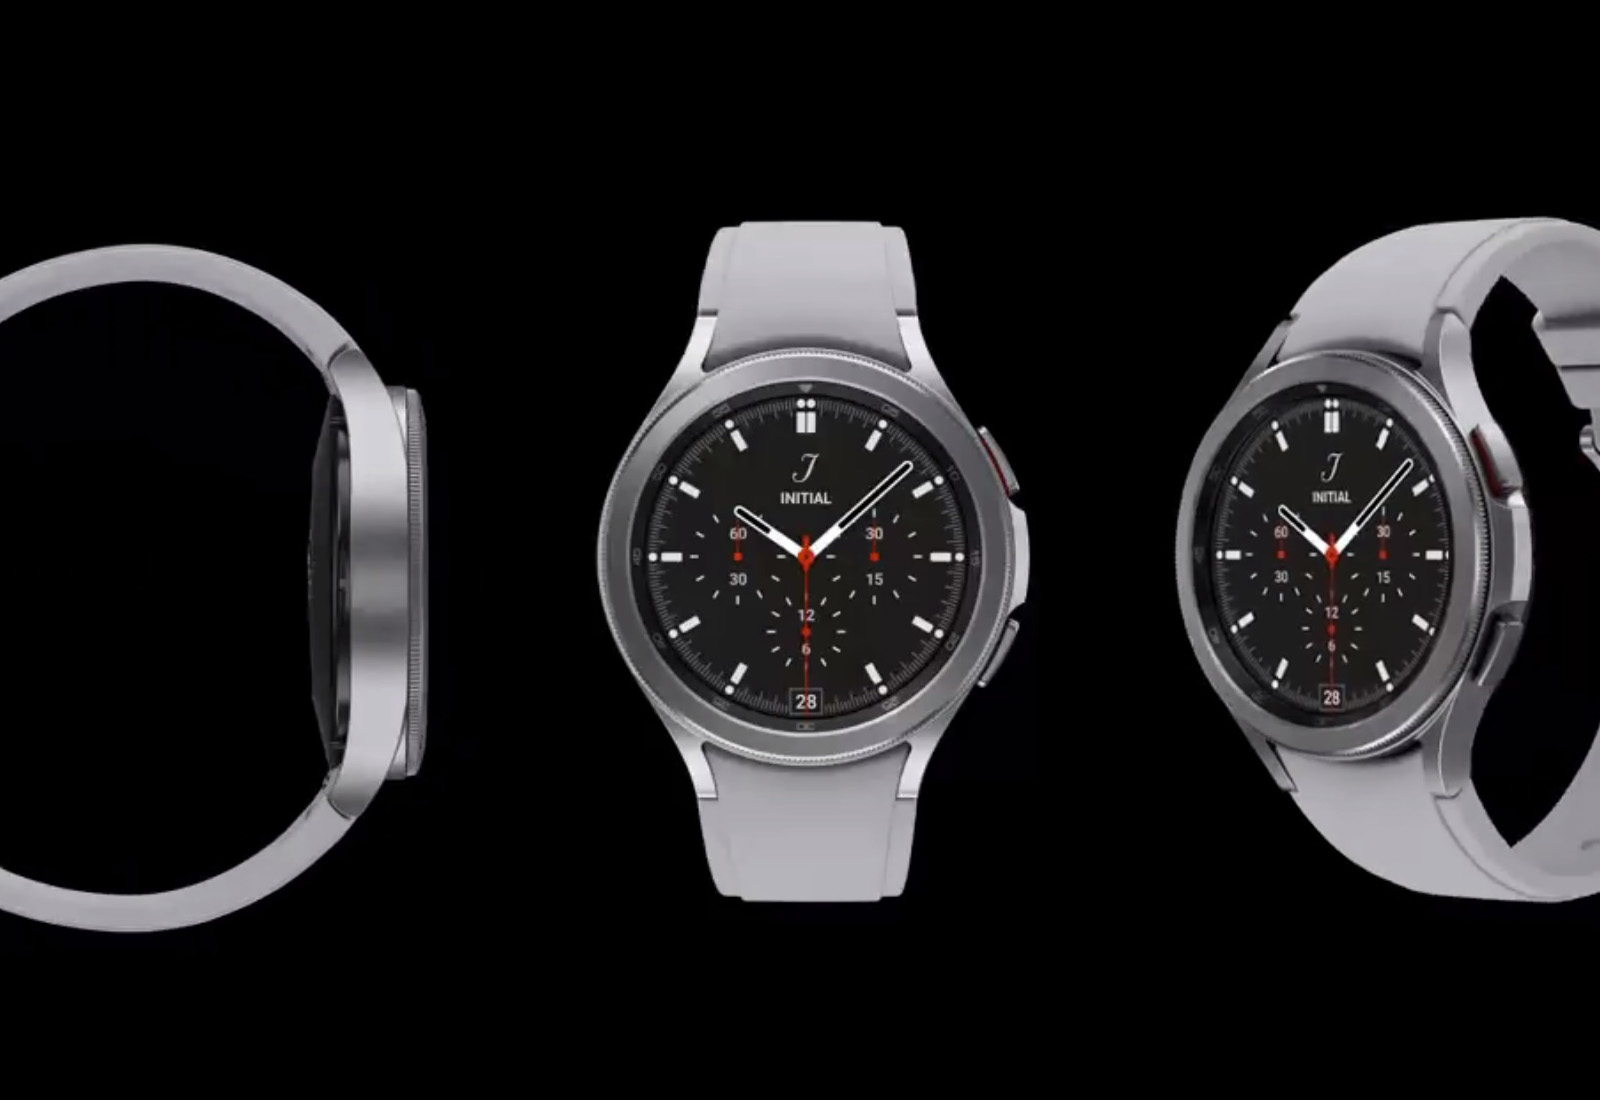 Самсунг Galaxy Watch 4 Classic